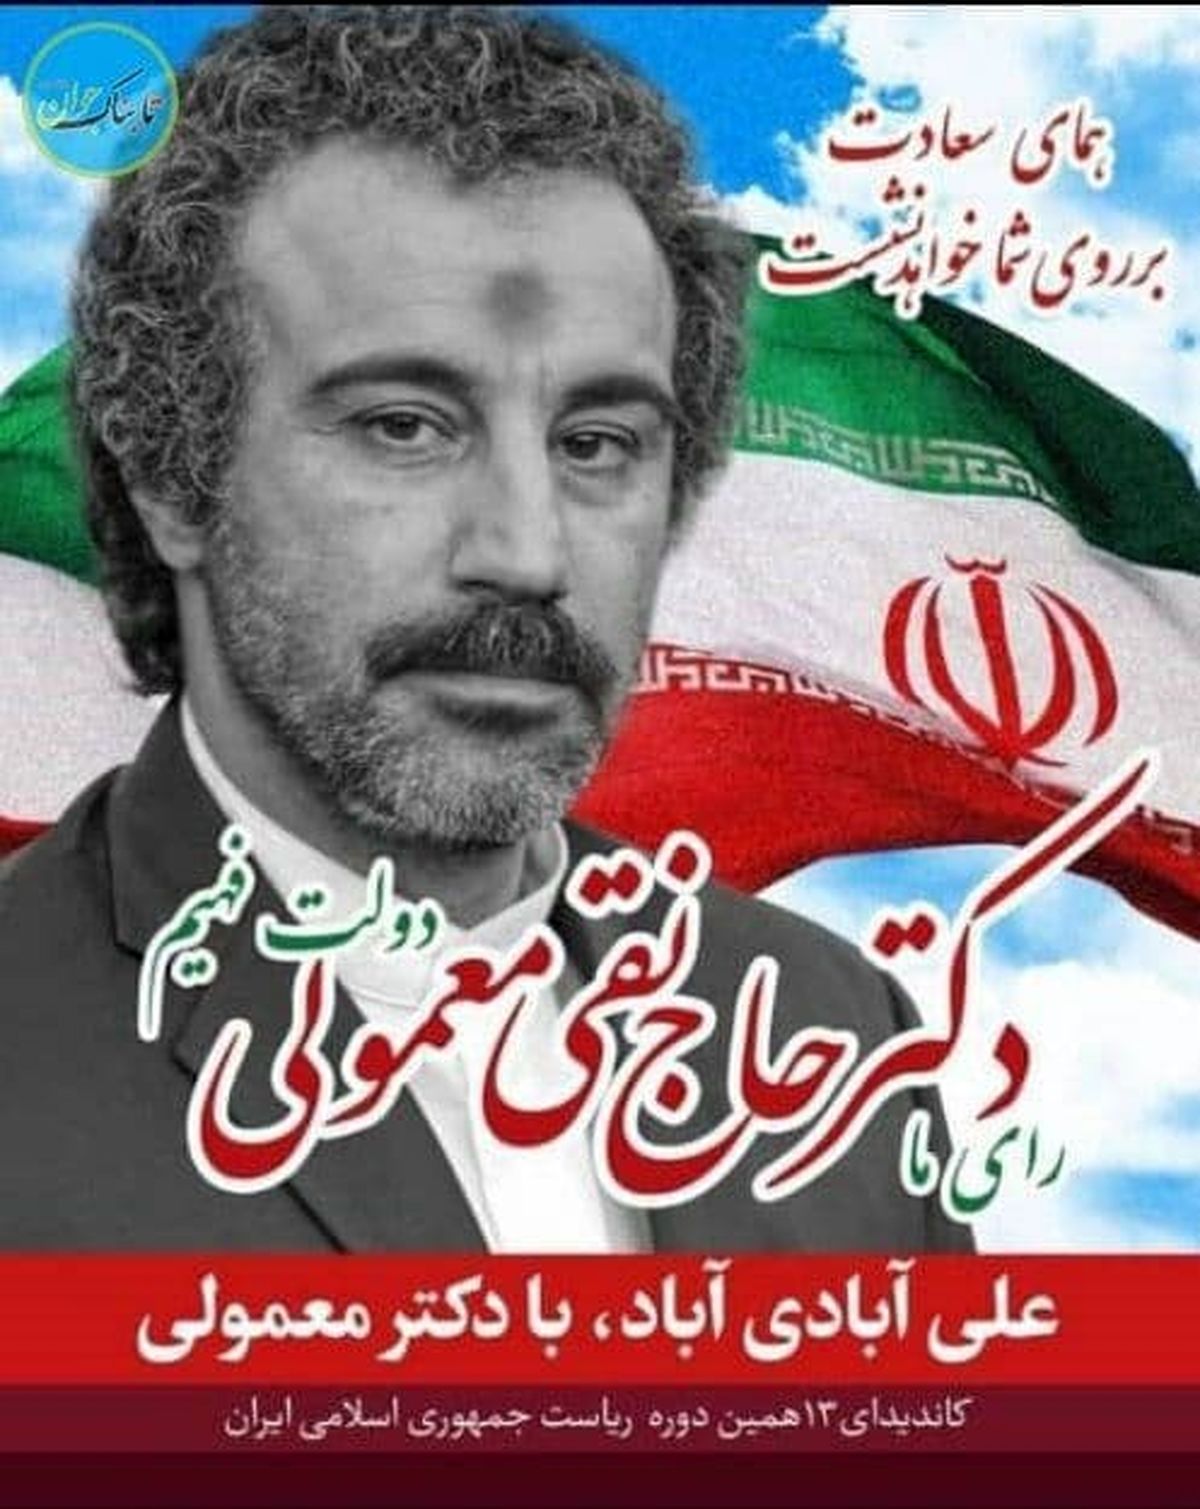 بازیگر ایرانی کاندیدای انتخابات شد +عکس